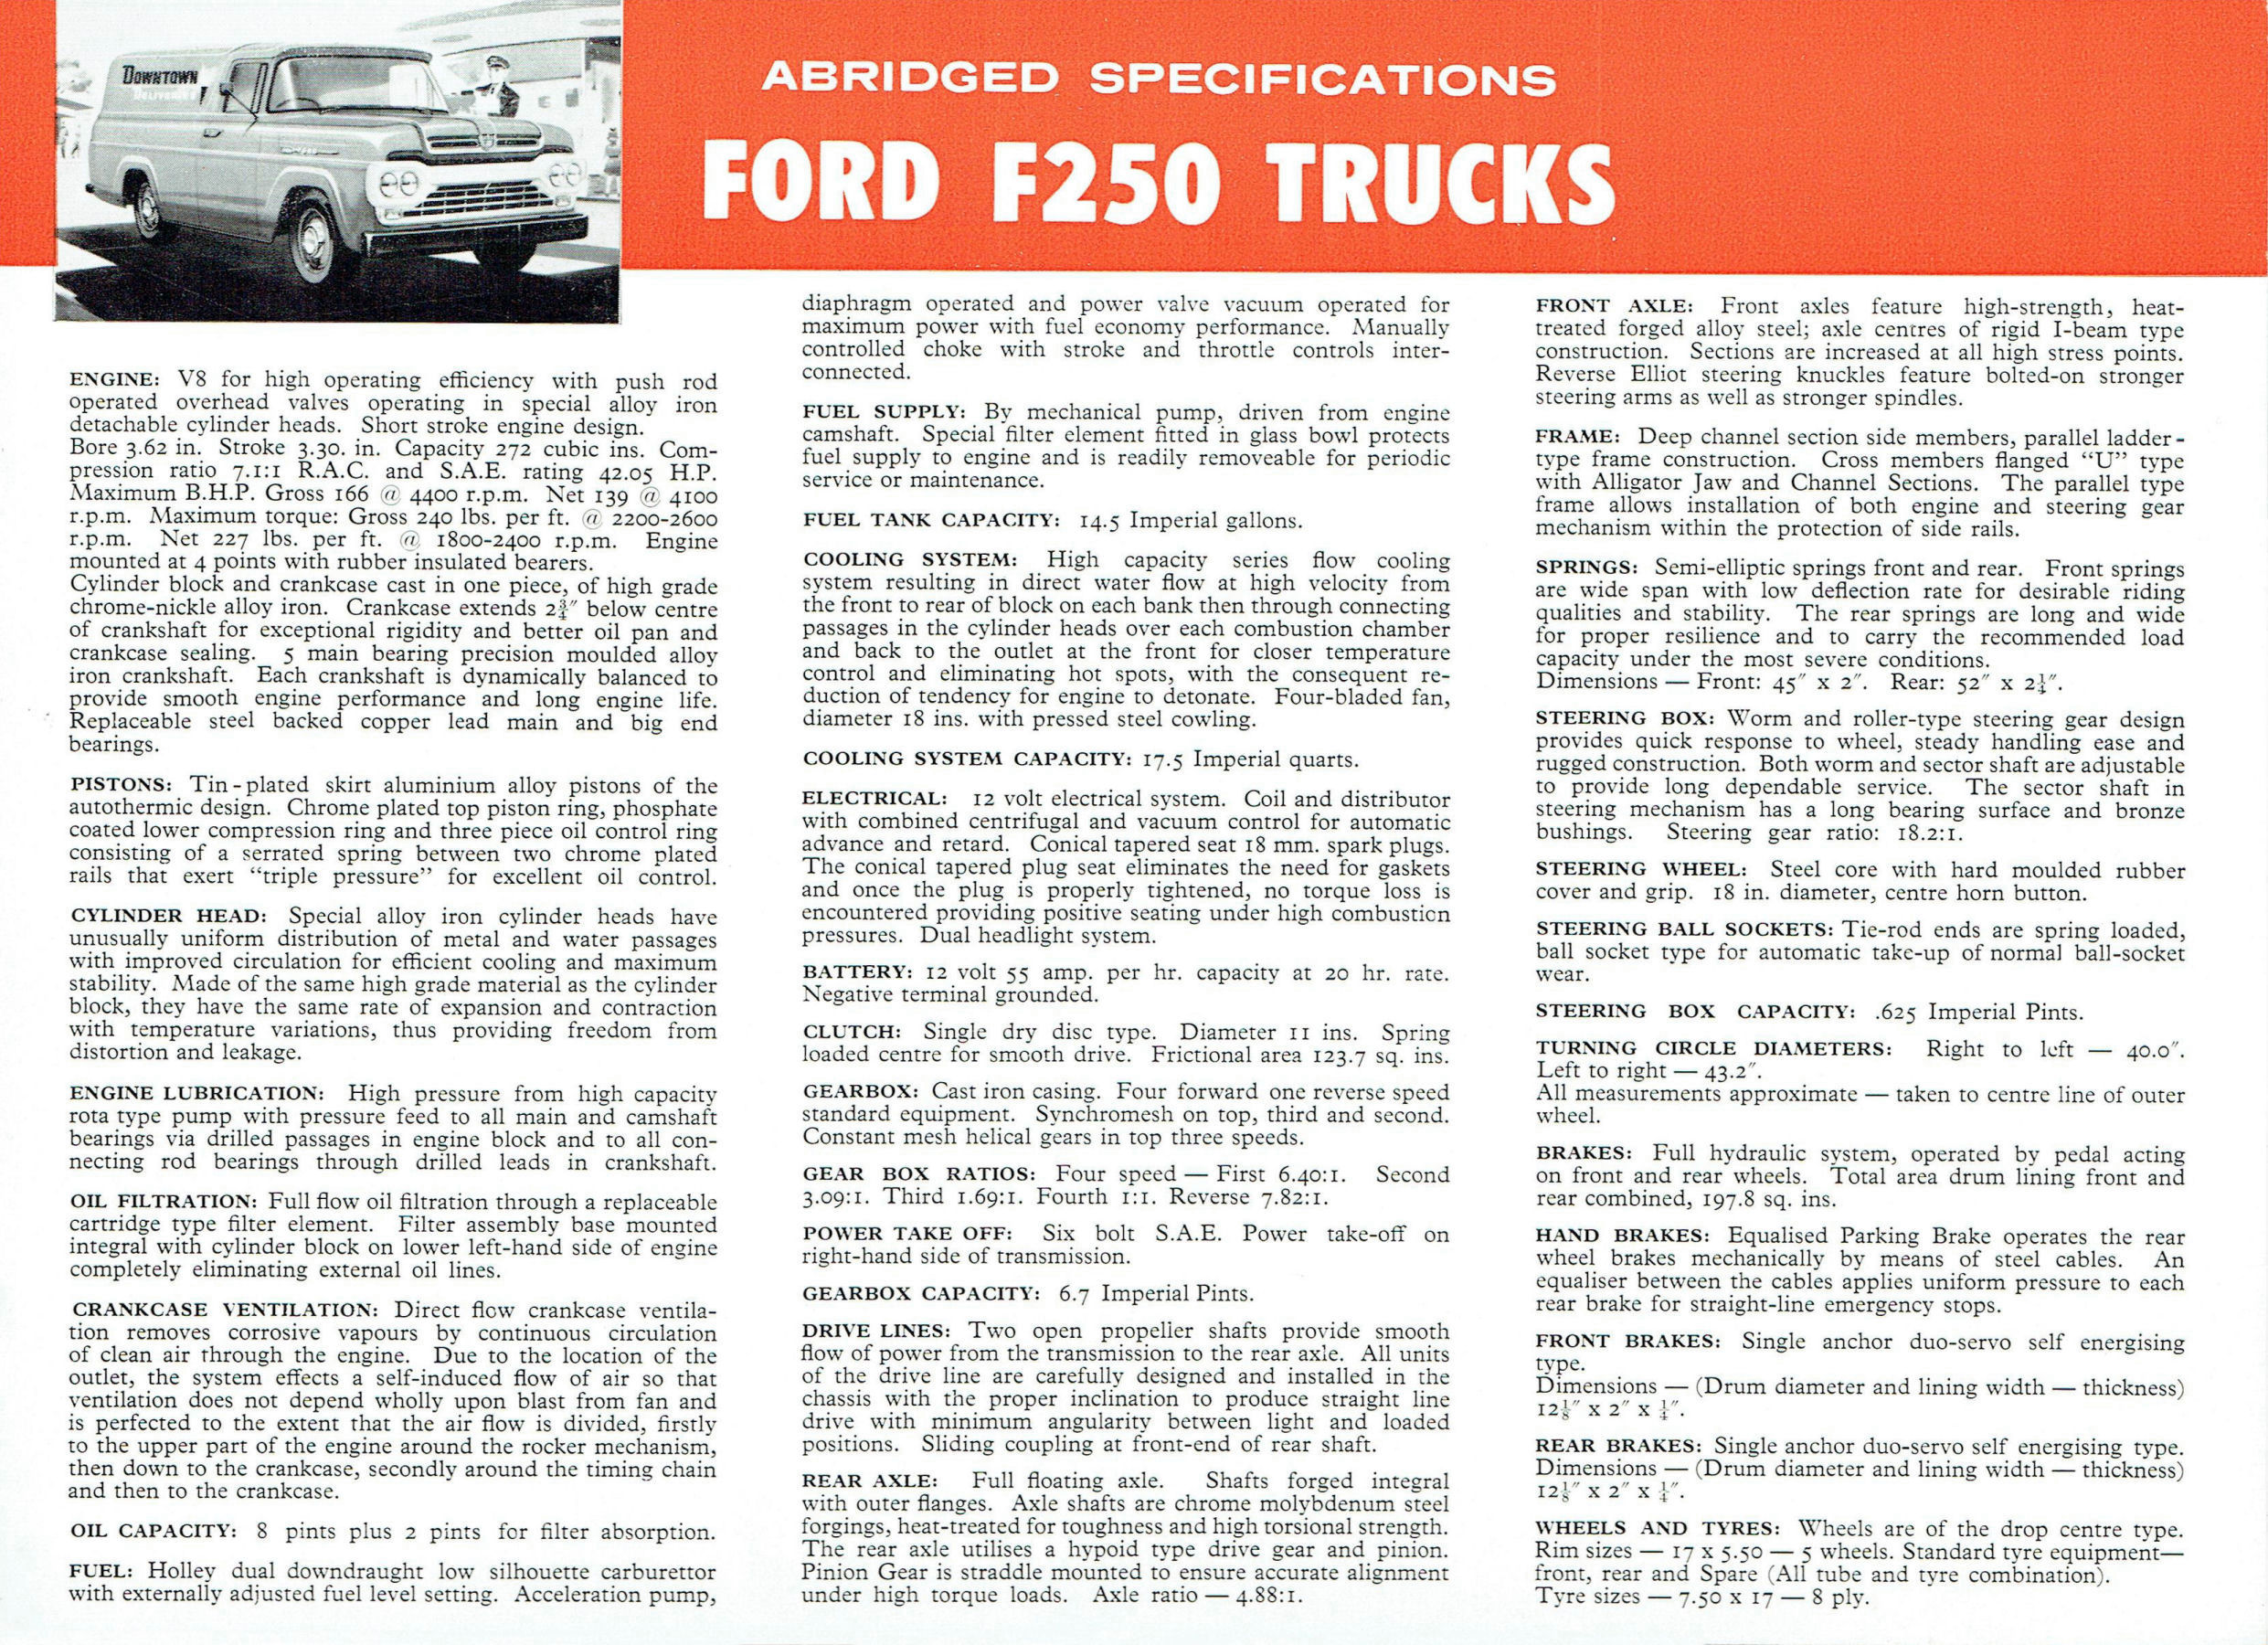 1960 Ford F250 Trucks (Aus)-05